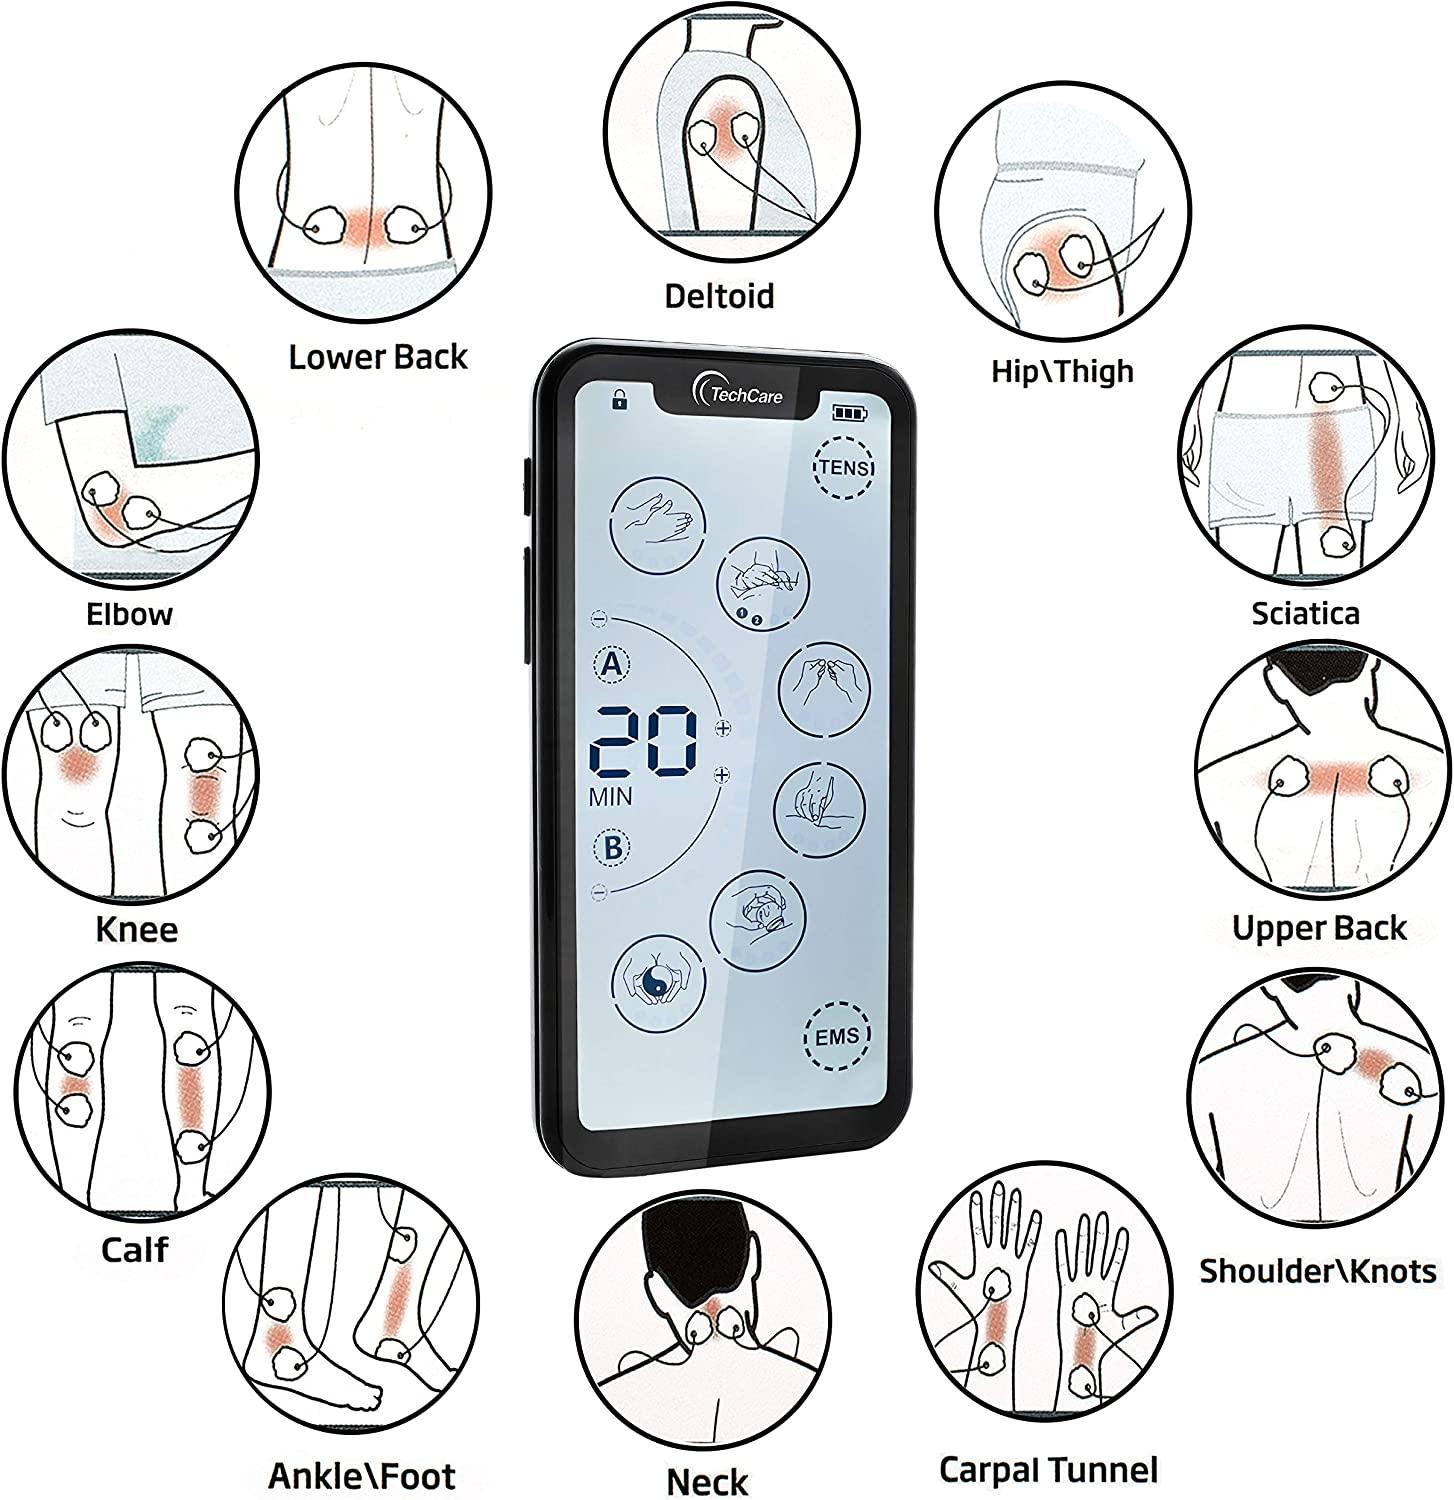 TechCare Massager SE - Portable TENS Unit 9 Modes